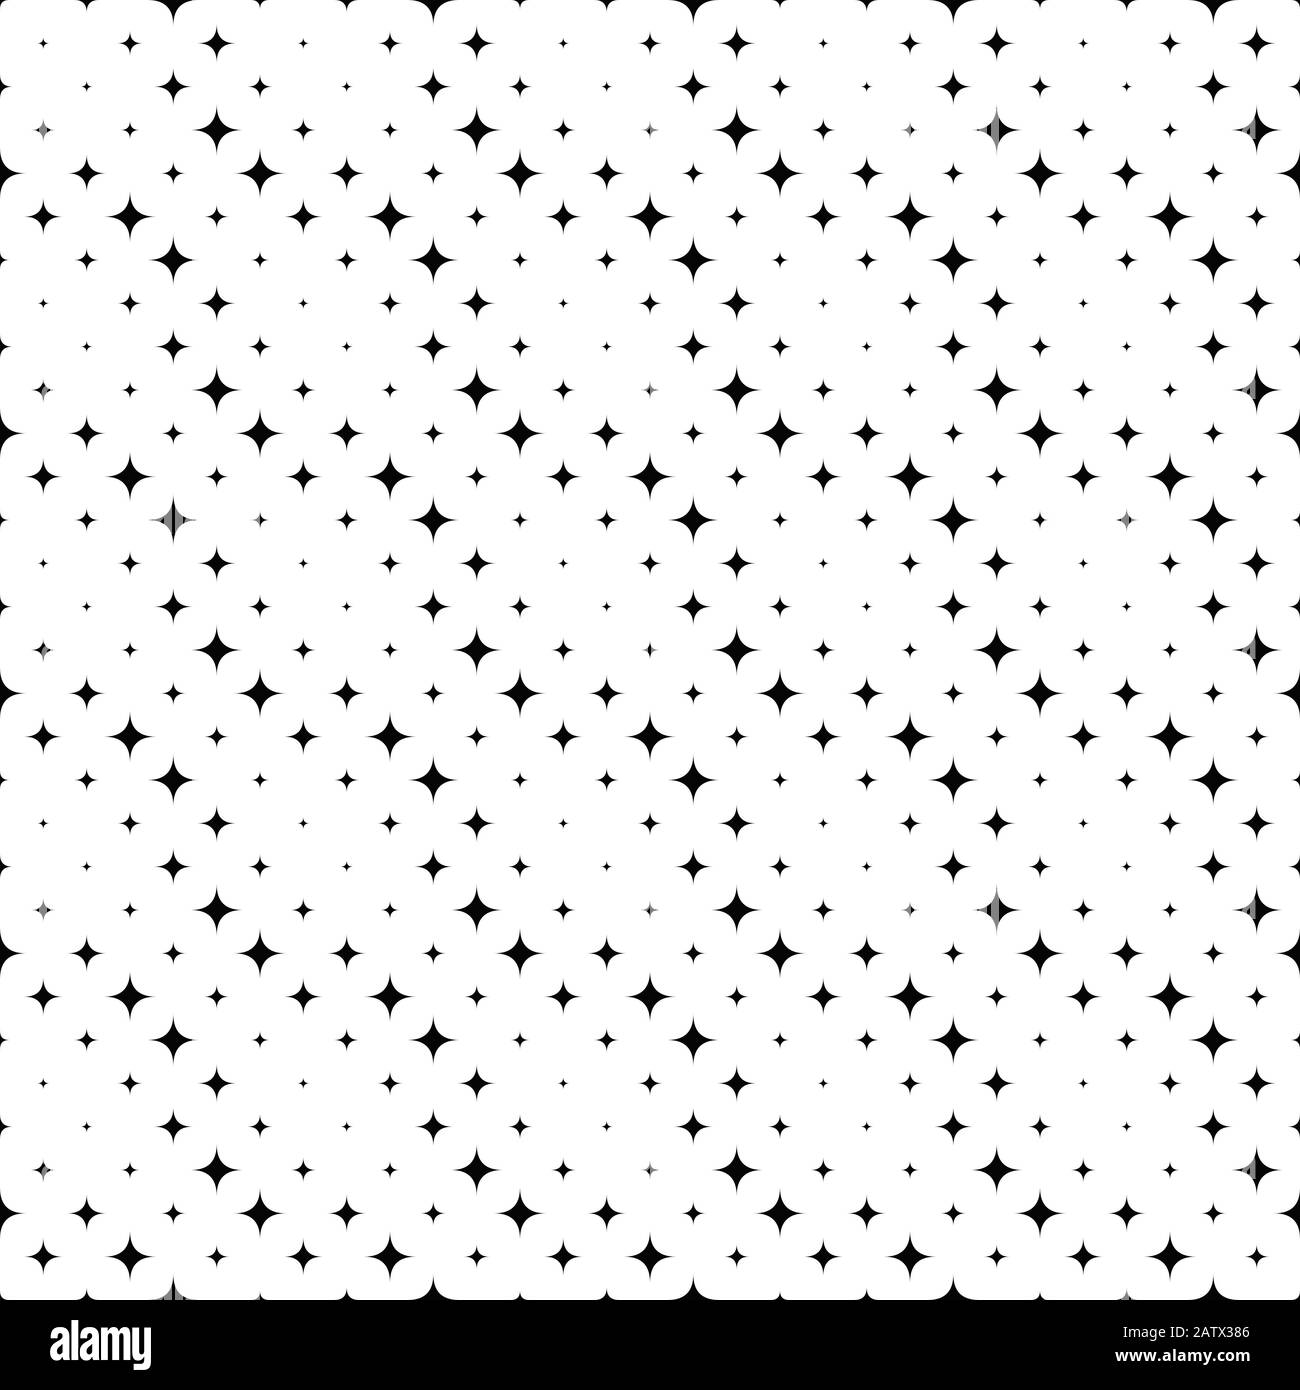 Hintergrunddesign mit geometrischem Schwarz-Weiß-Sternmuster - abstrakte Vektorgrafik Stock Vektor